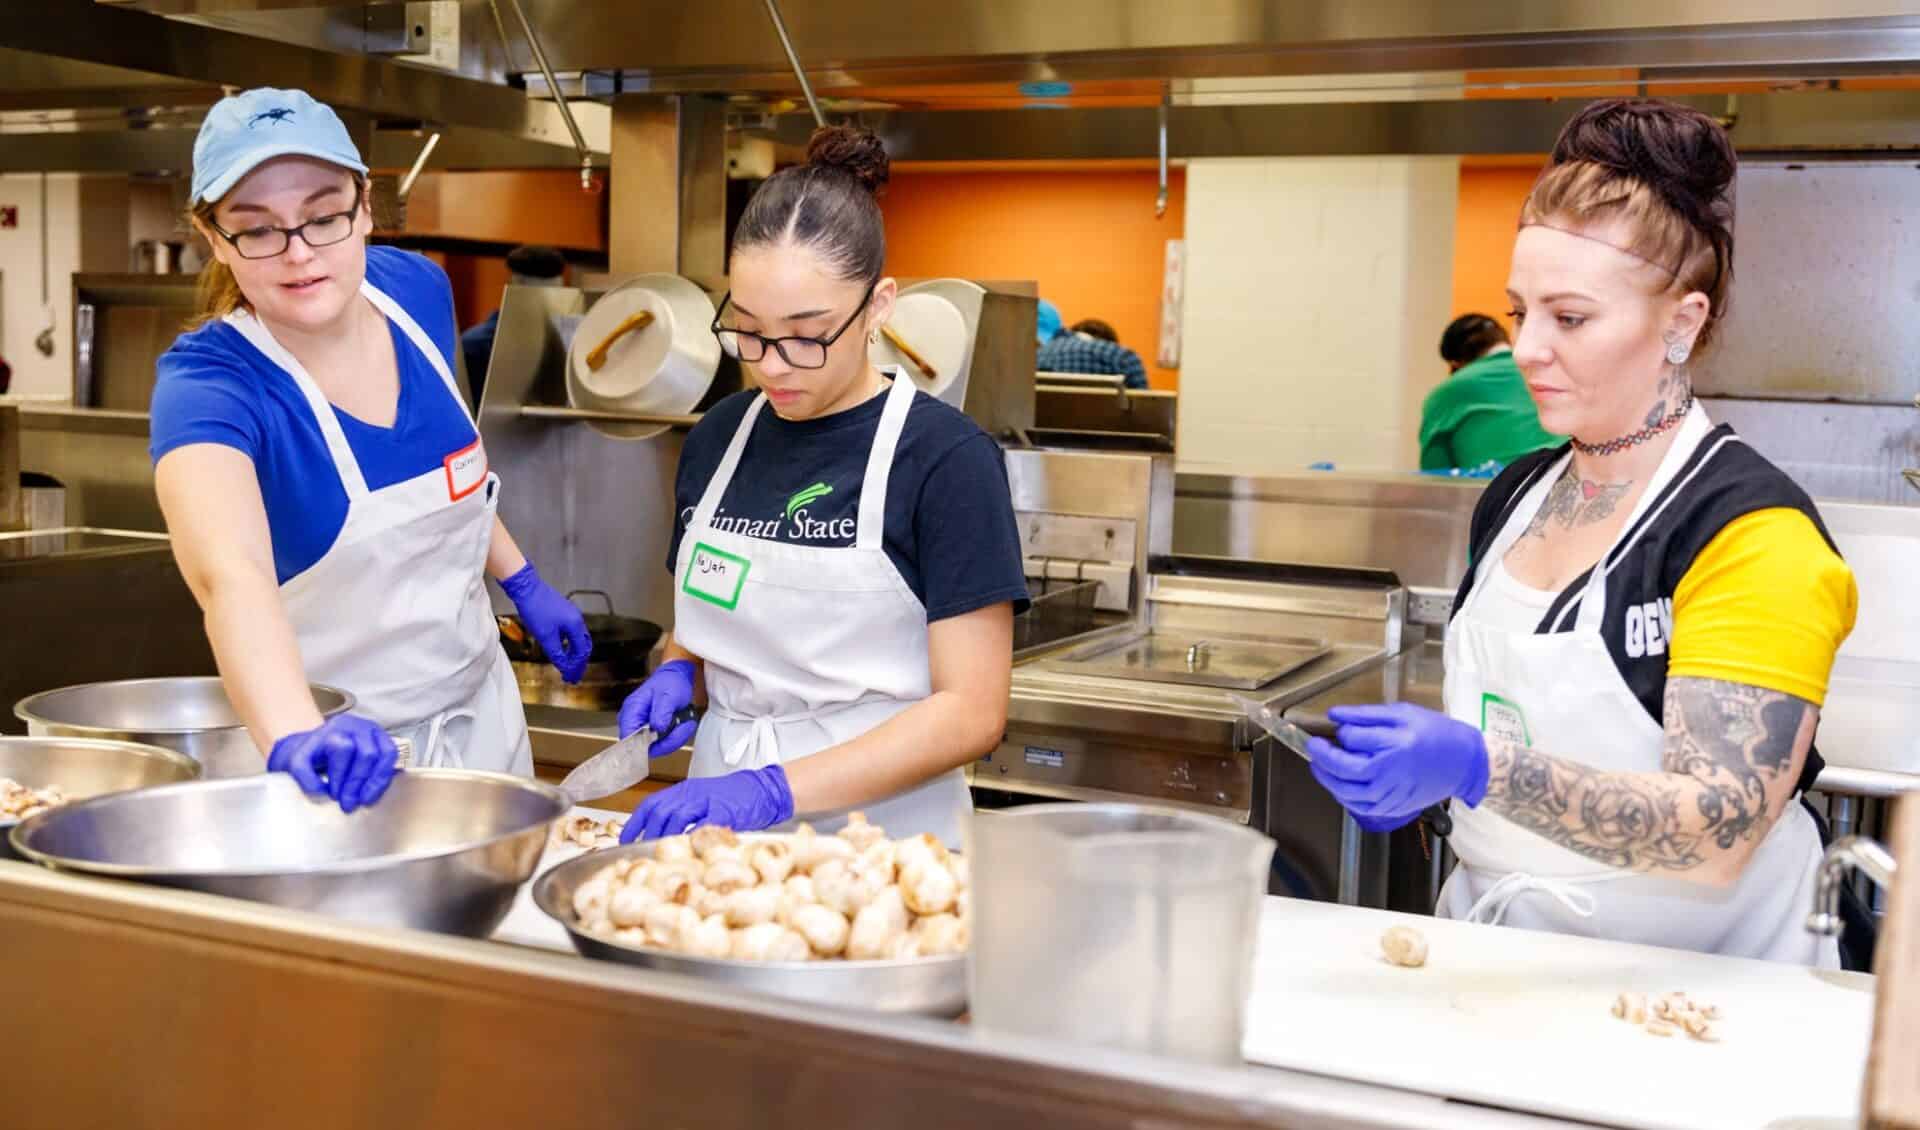 Students Rachel Scheidt, Na’Jah Lott and Chelsea Kiskaden working in the kitchen